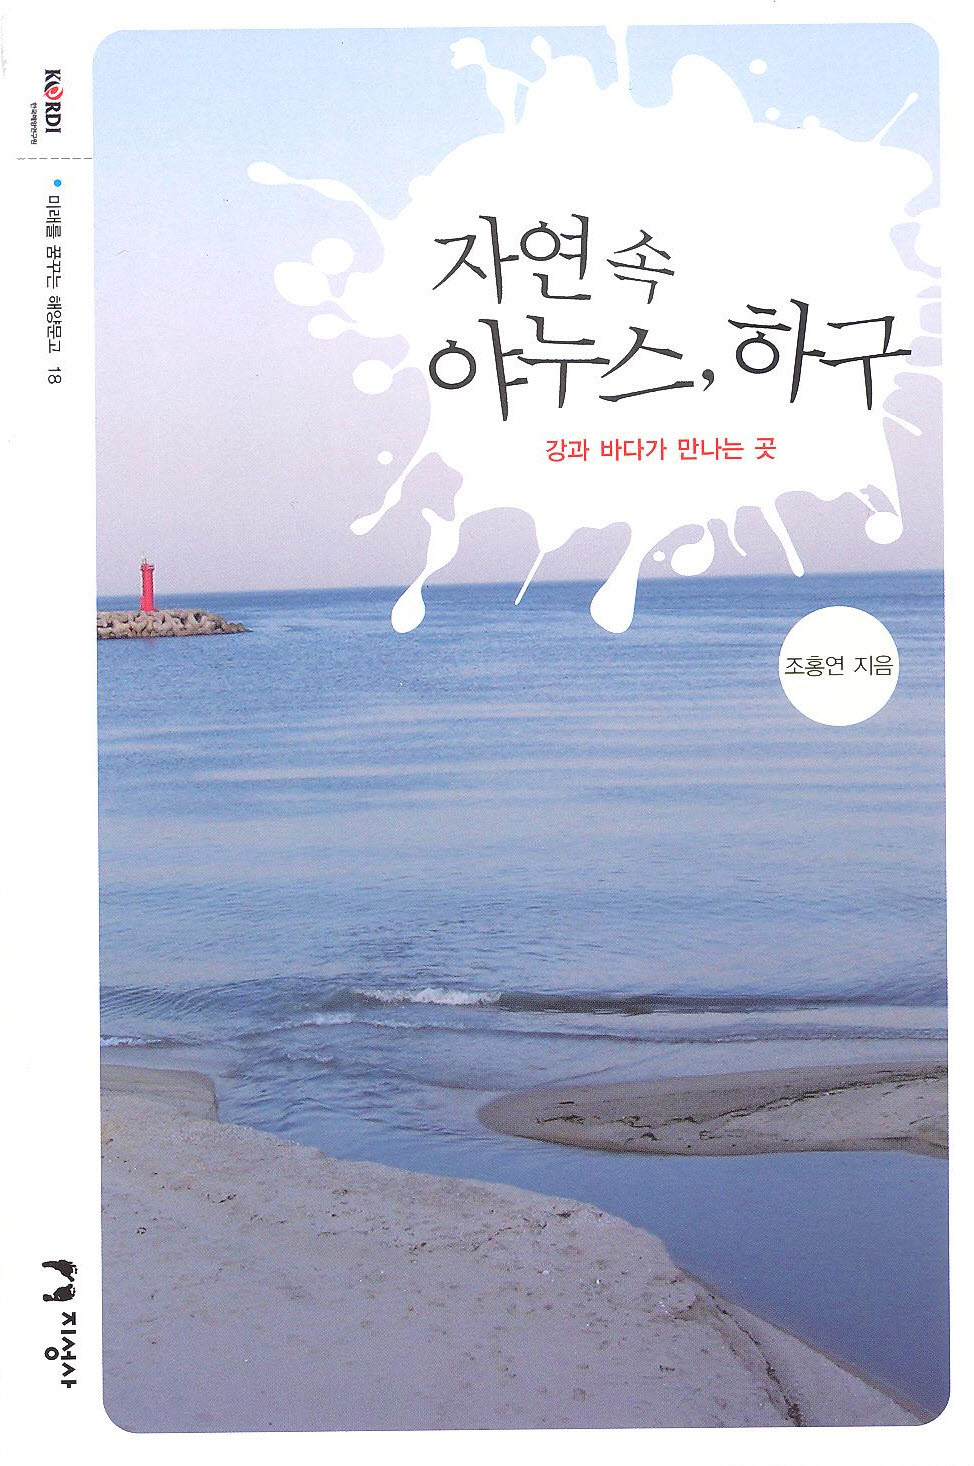 Republic of Korea Ocean Research & Development Institute publishes Janus in Nature: The Estuary (Marine Book Series vol. 18)